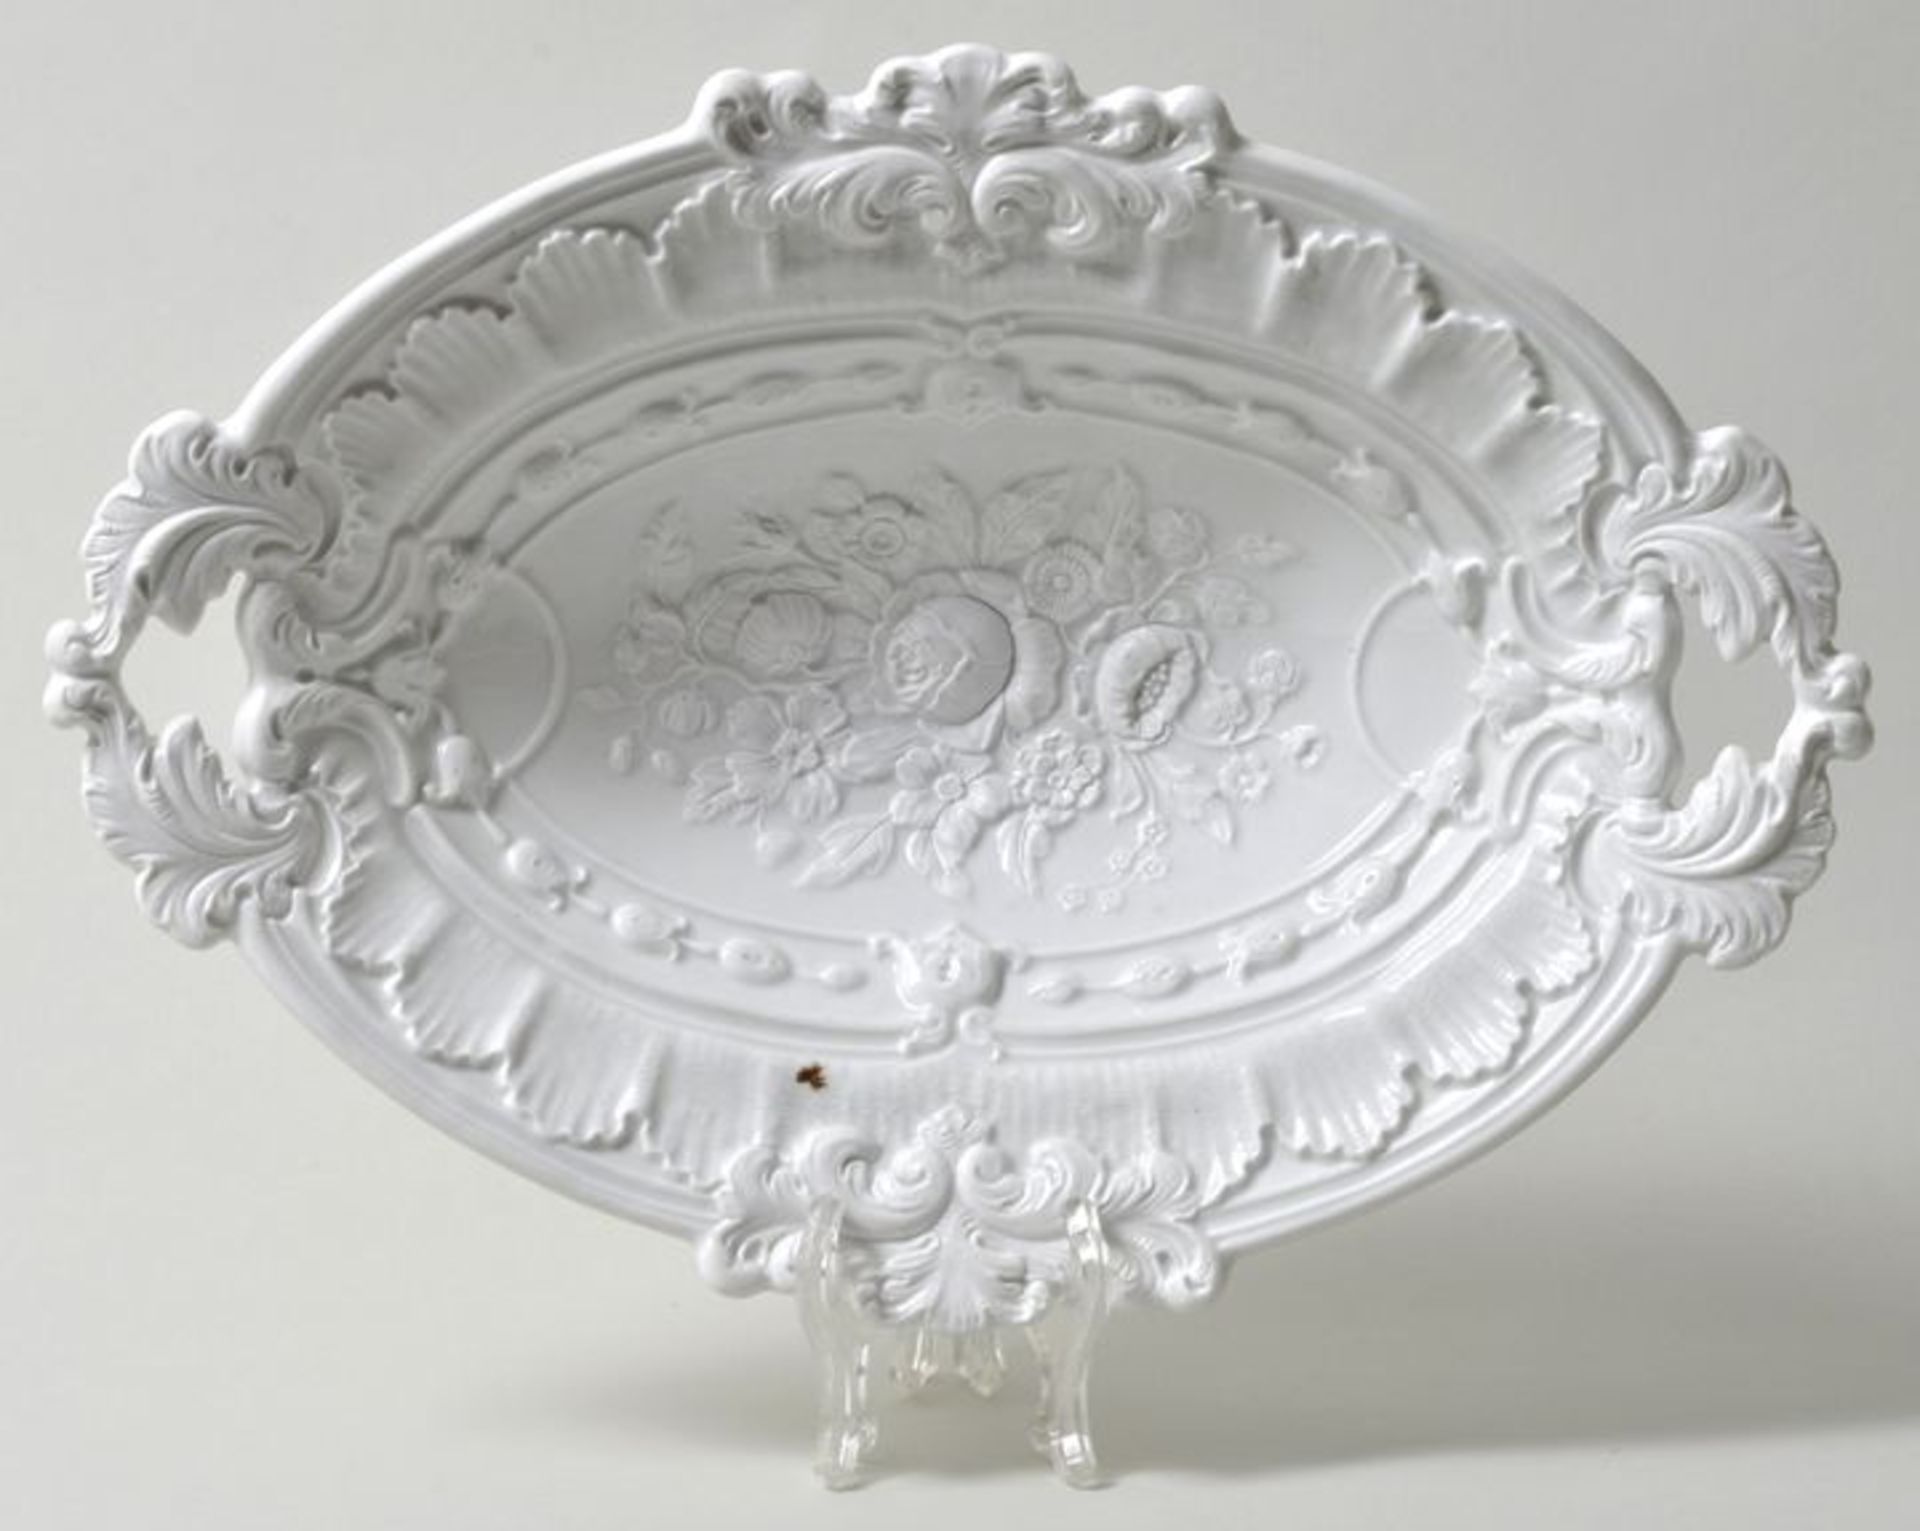 Schmuckschale, Meissen, 2. H. 19. Jh.Porzellan, weiß. Ovale Form mit reliefiertem Akanthus-